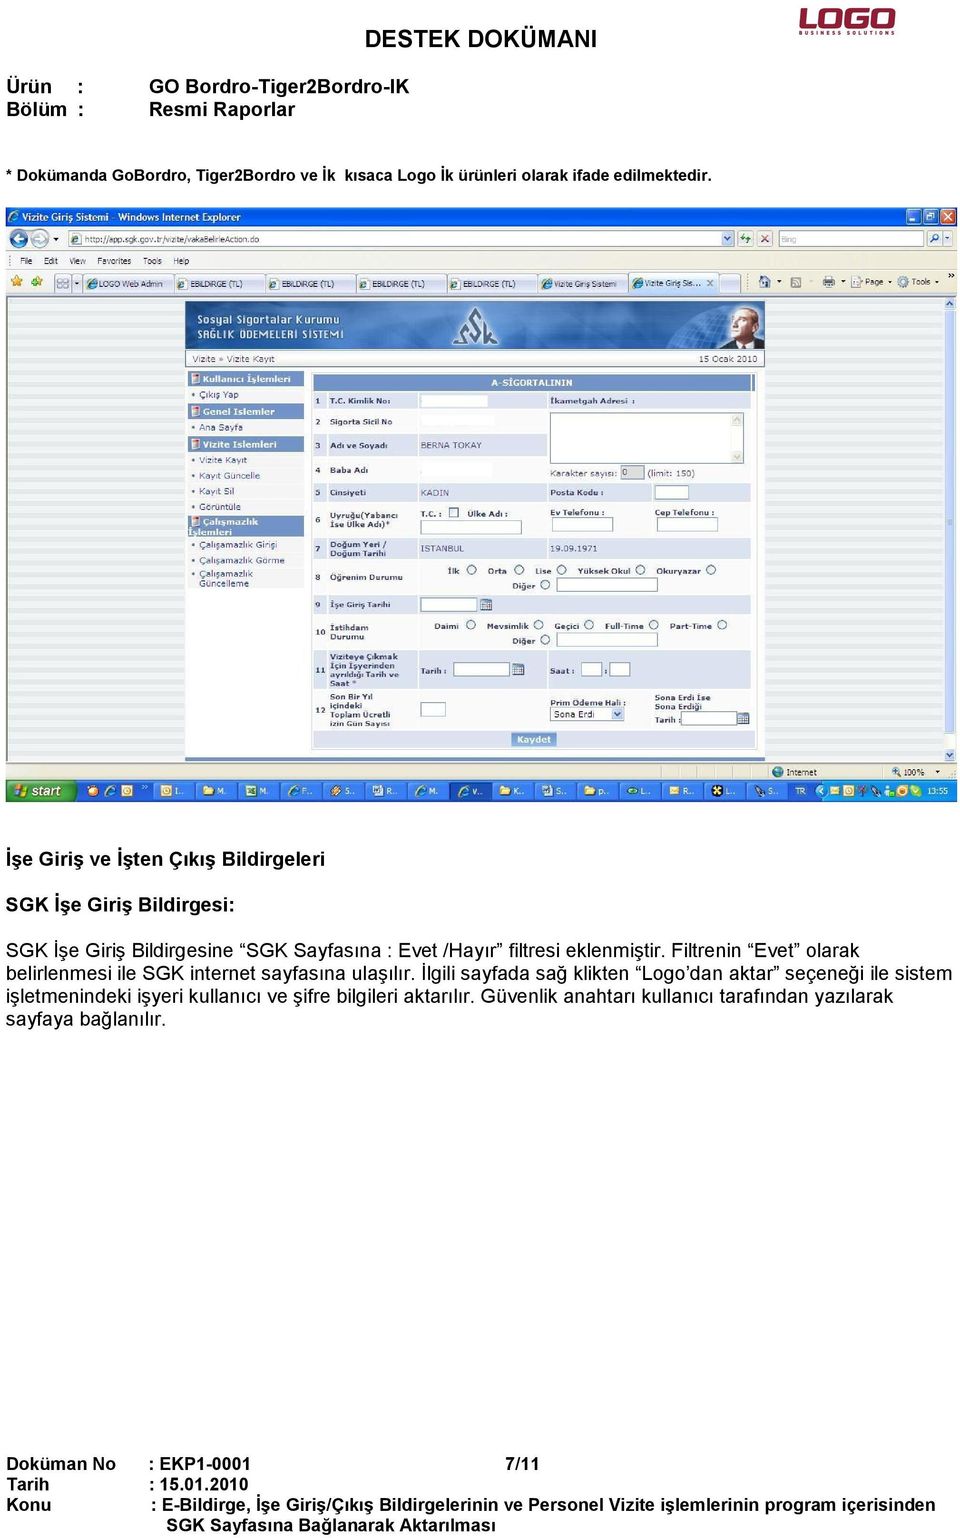 Đlgili sayfada sağ klikten Logo dan aktar seçeneği ile sistem işletmenindeki işyeri kullanıcı ve şifre